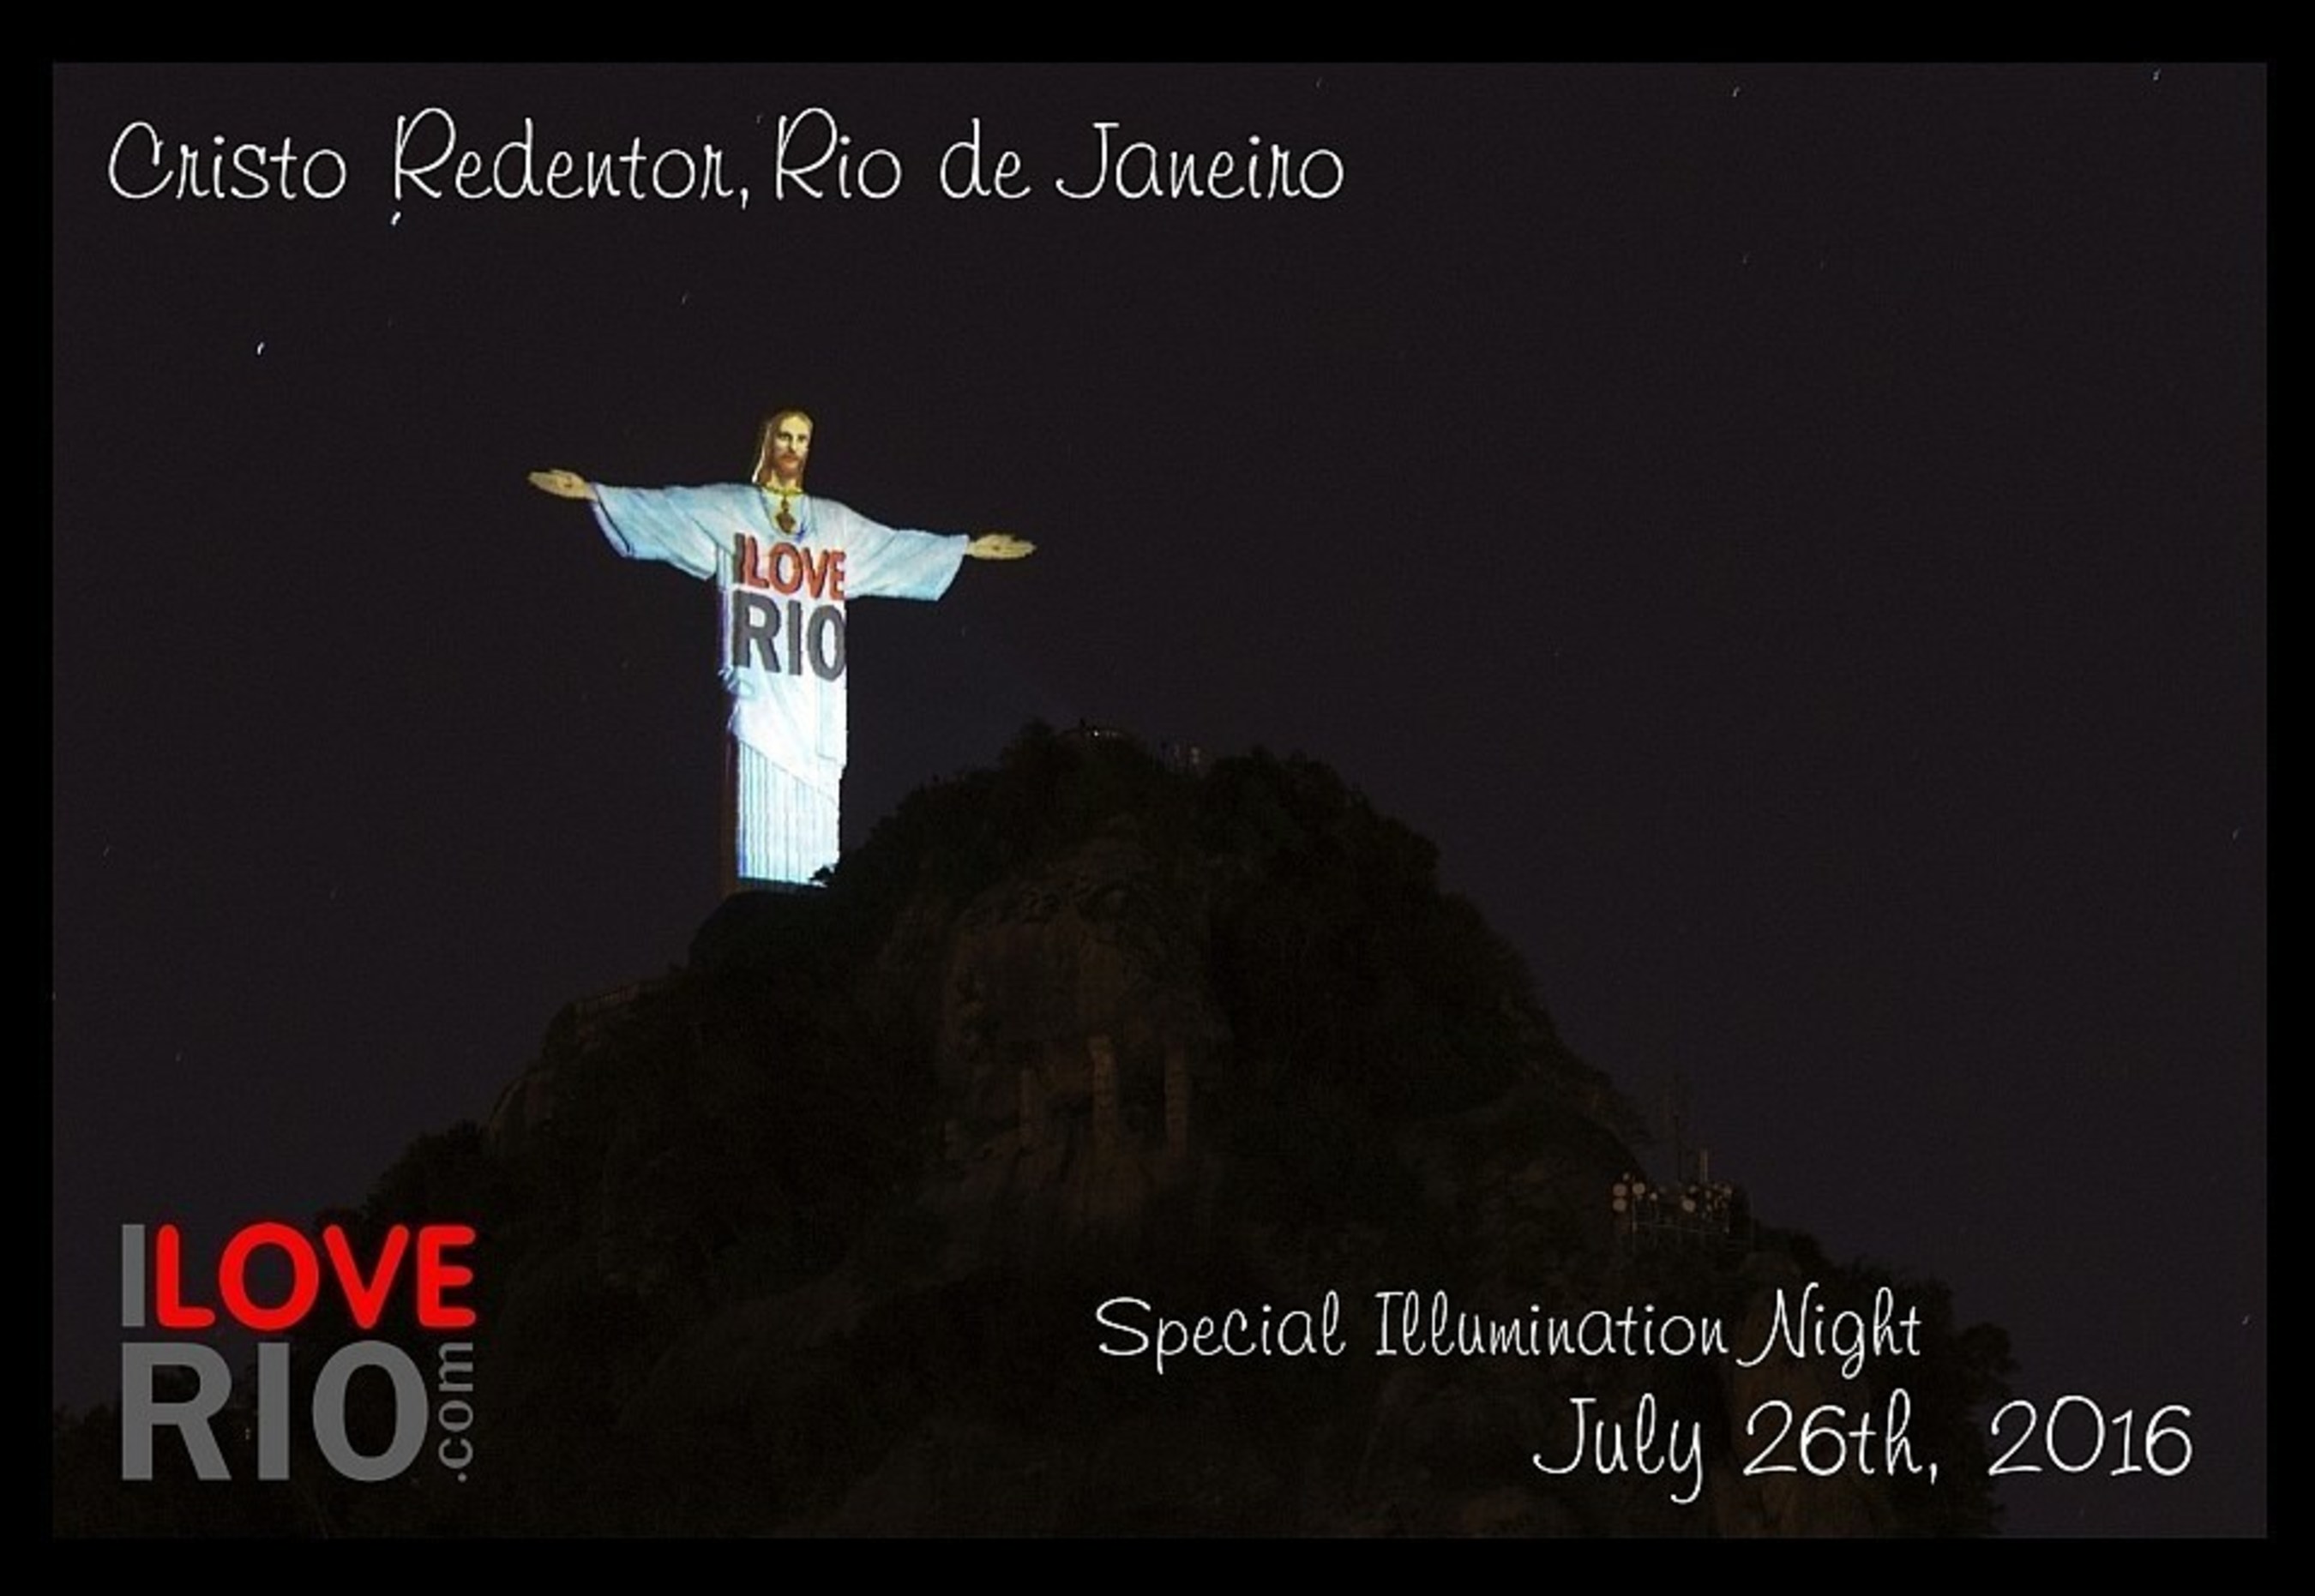 Christ the Redeemer Monument, Rio de Janeiro, Brazil - Special Illumination Night for ILOVERIO.COM